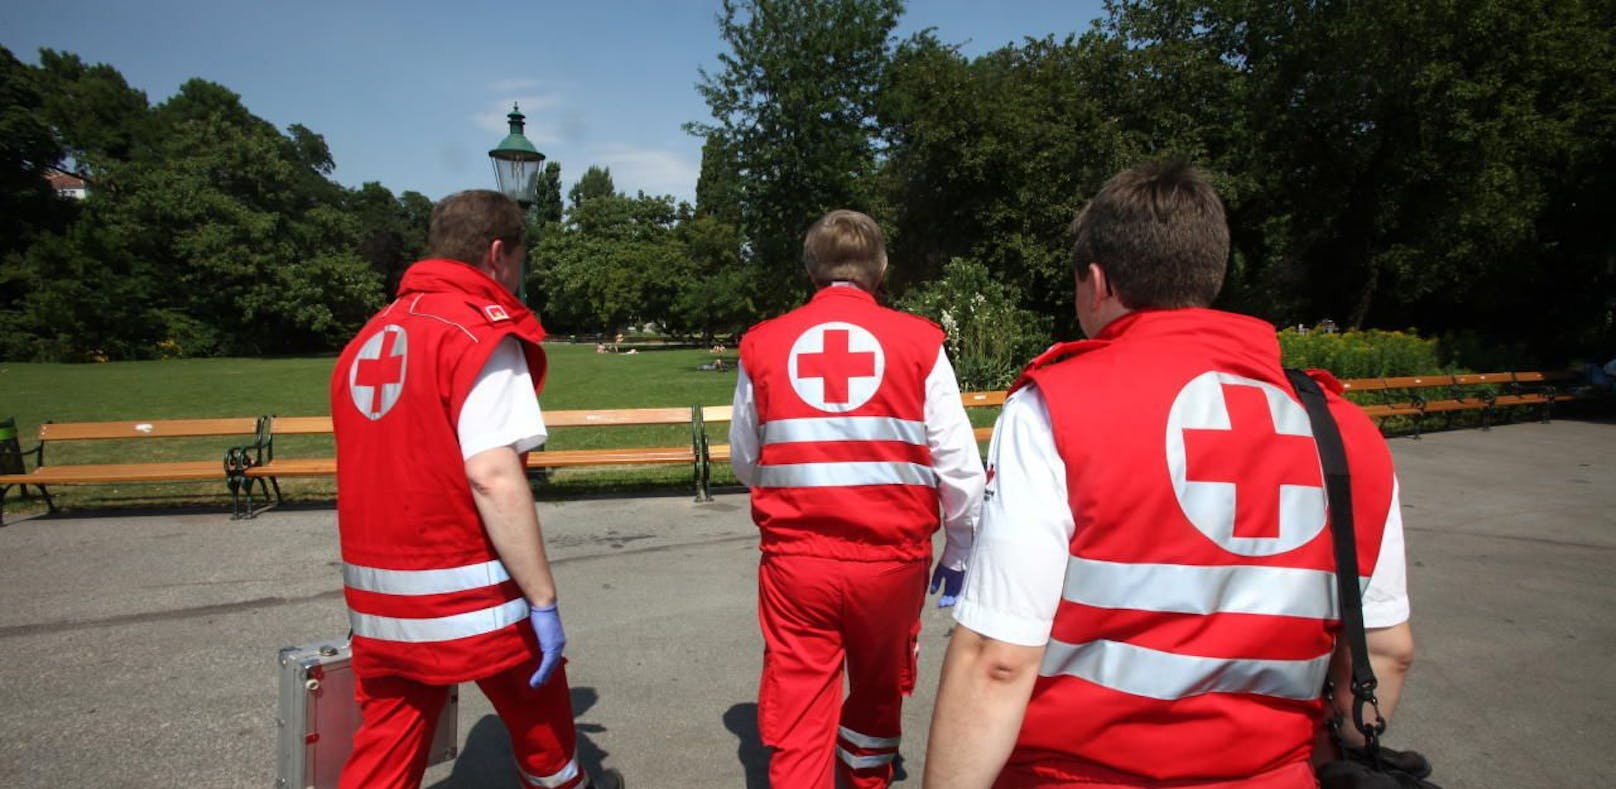 Das Wiener Rote Kreuz sucht nach Zivildienern und bietet dafür nun mehr Starttermine an.